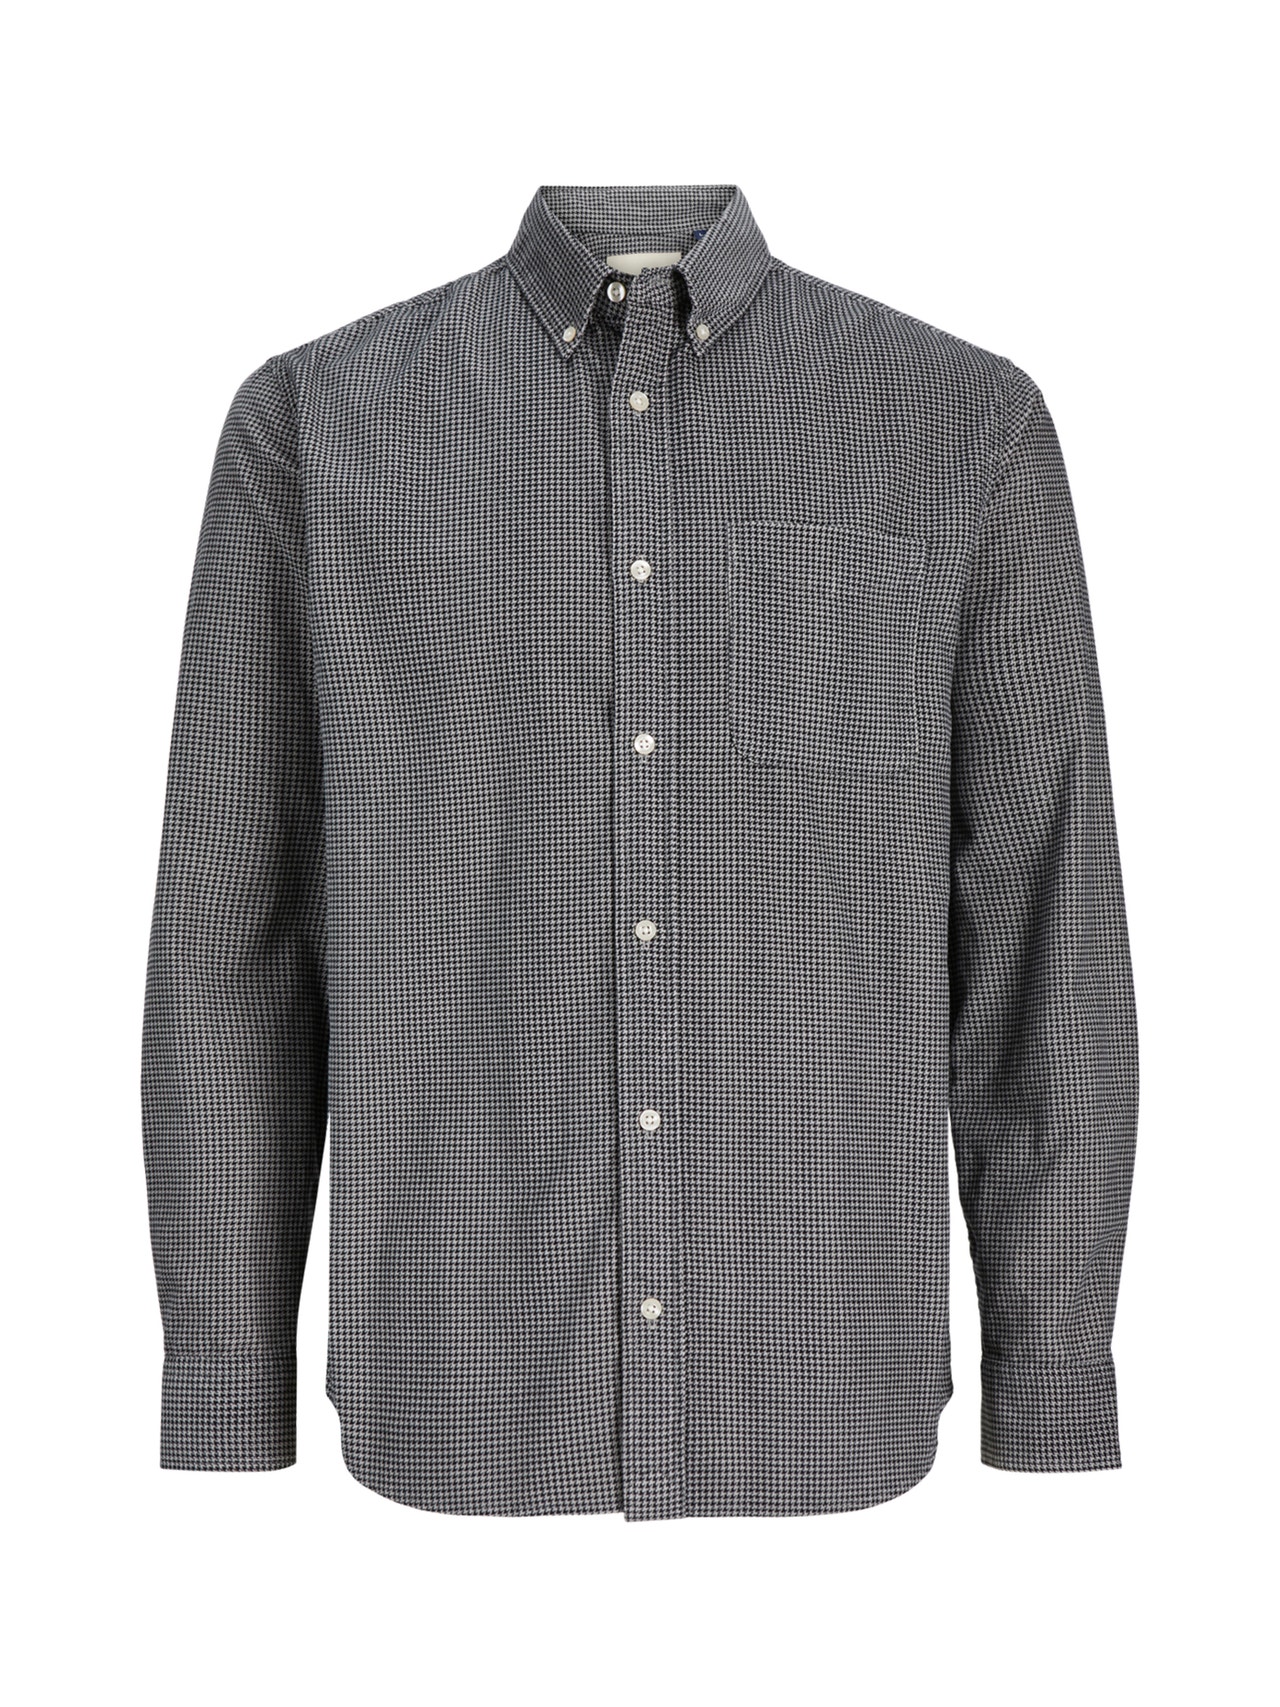 Jack & Jones Comfort Fit Shirt -Grey - 12245503